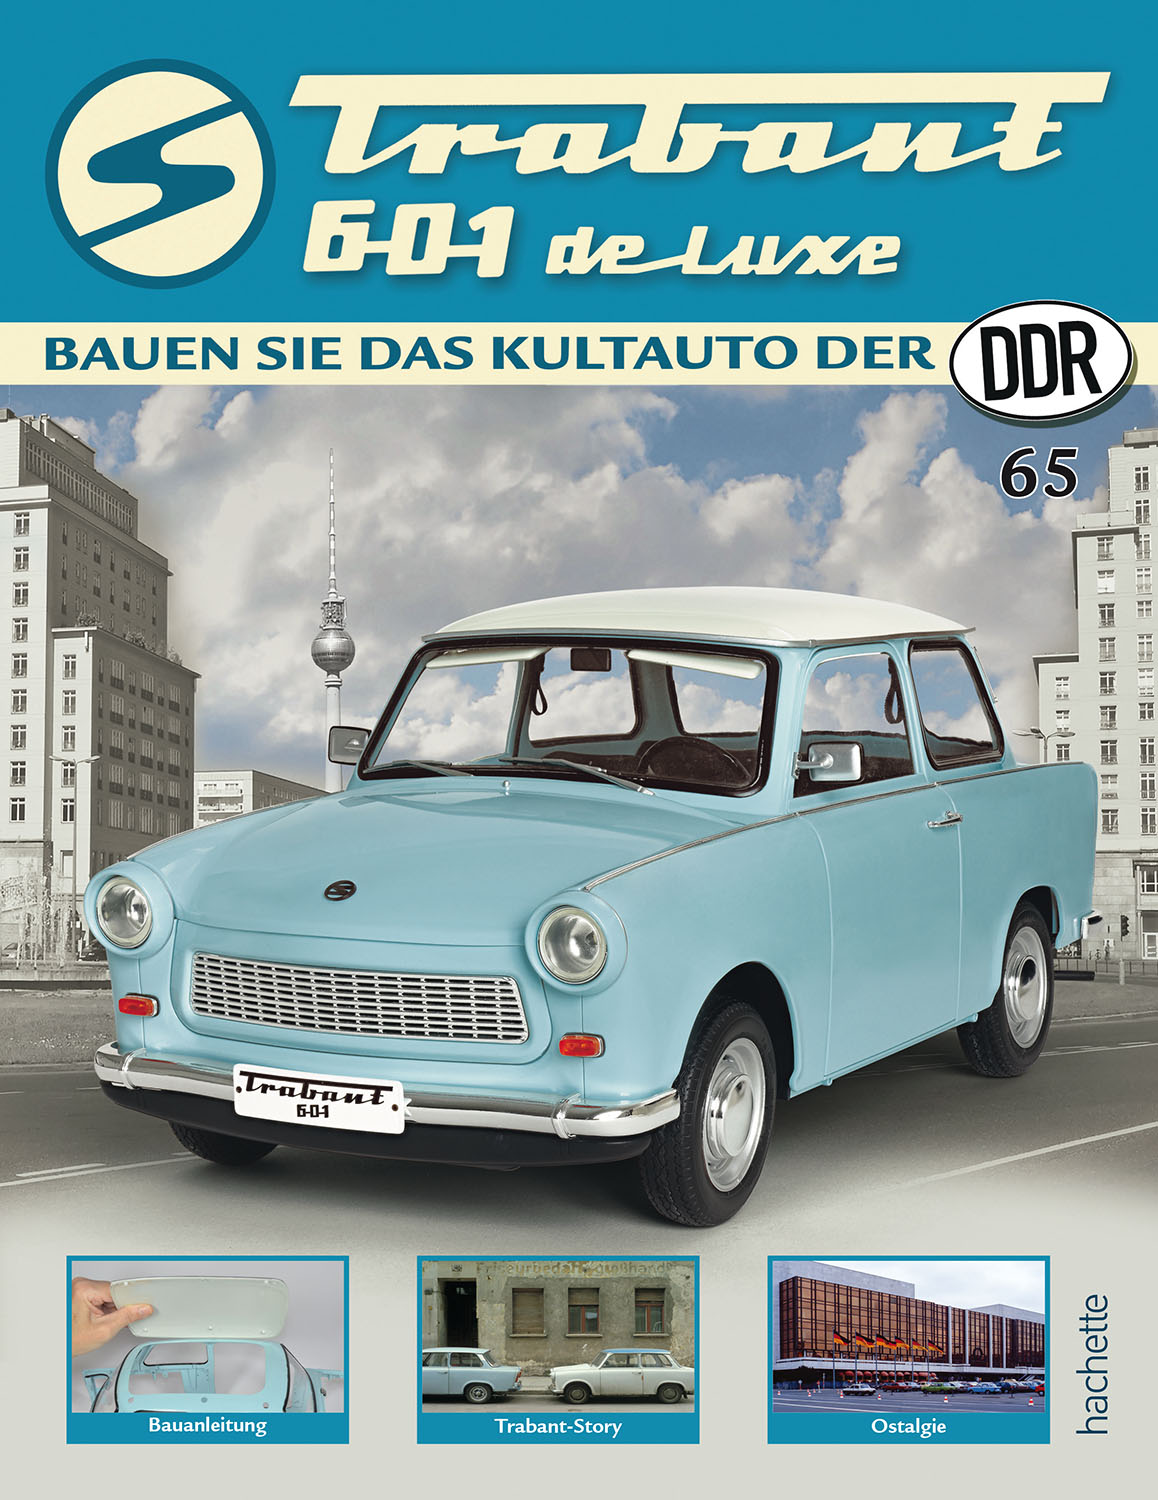 Trabant 601 de luxe – Ausgabe 065